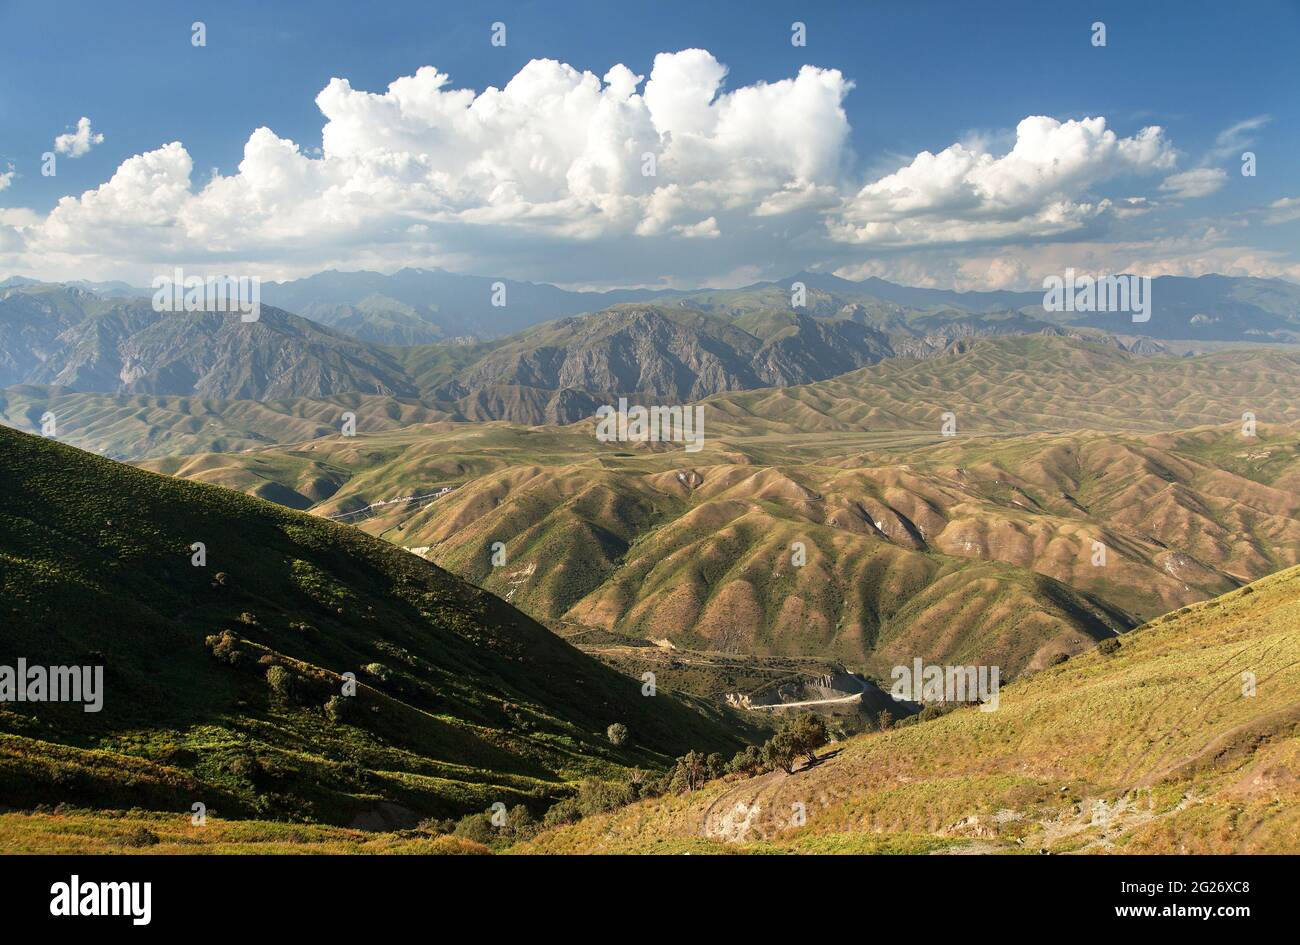 Montagne Tian Shan in Kirghizistan, vista panoramica sulle montagne della steppa kirghizistan Foto Stock